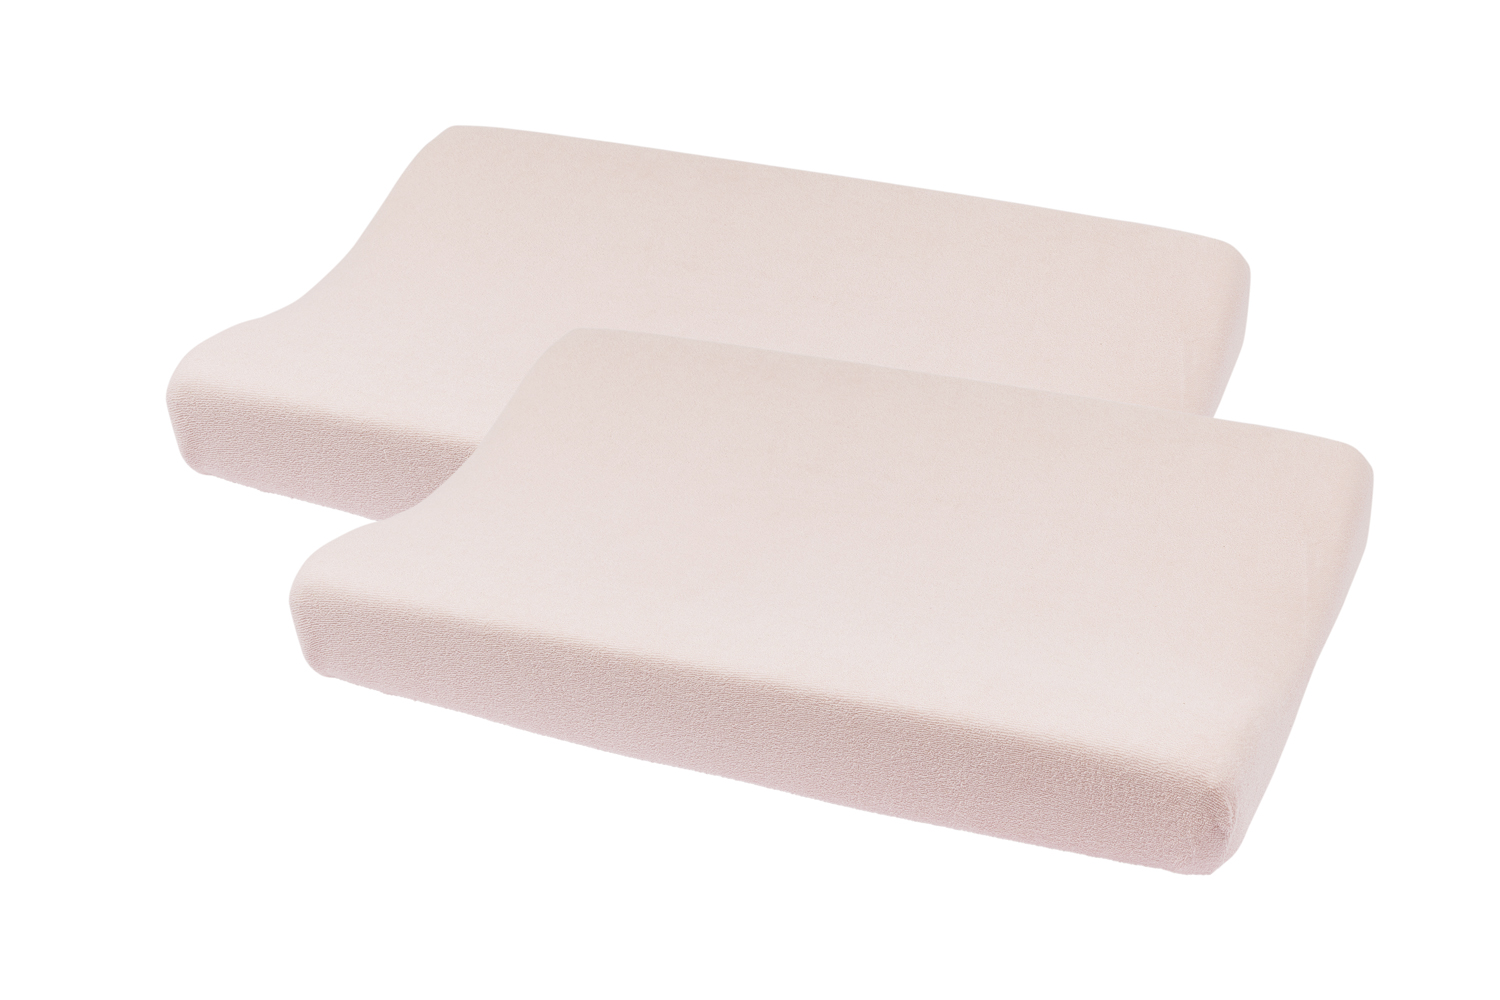 Aankleedkussenhoes 2-pack badstof Uni - soft pink - 50x70cm